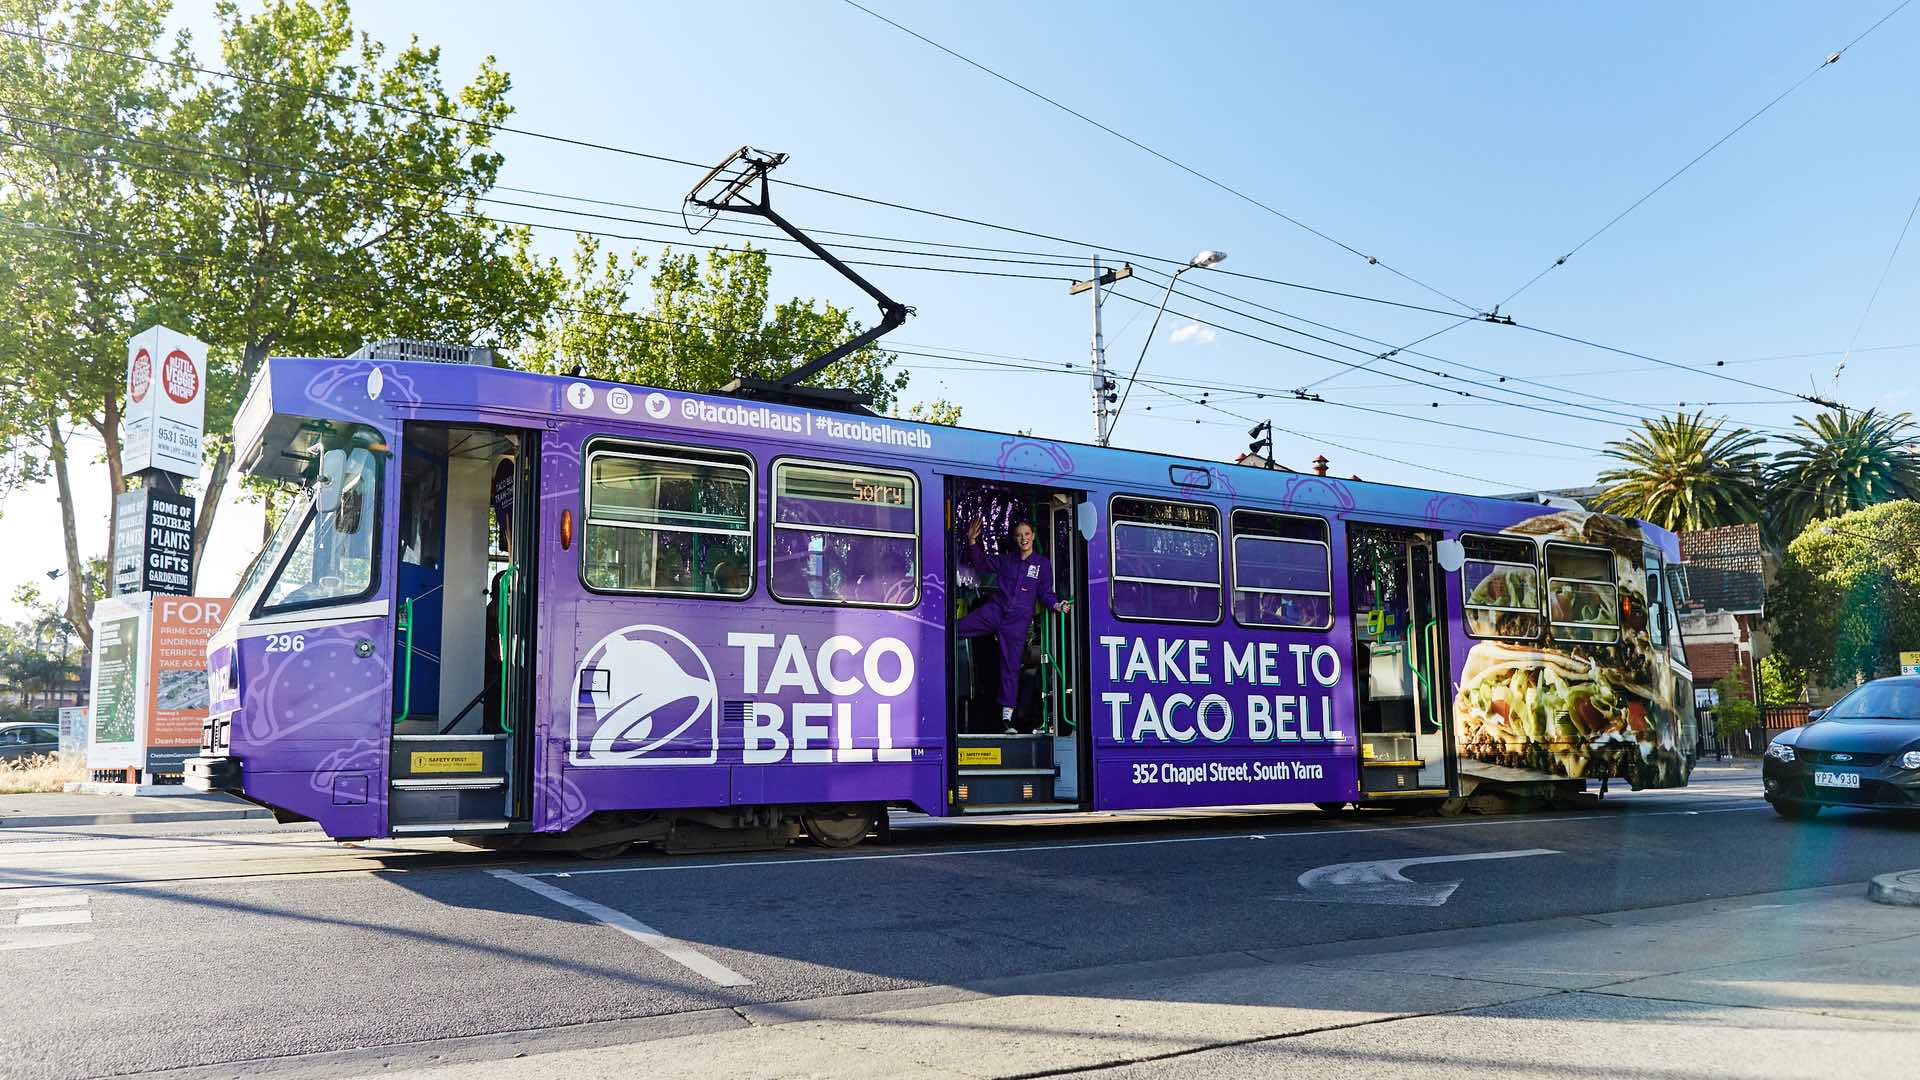 Taco Bell's Tram-Thru